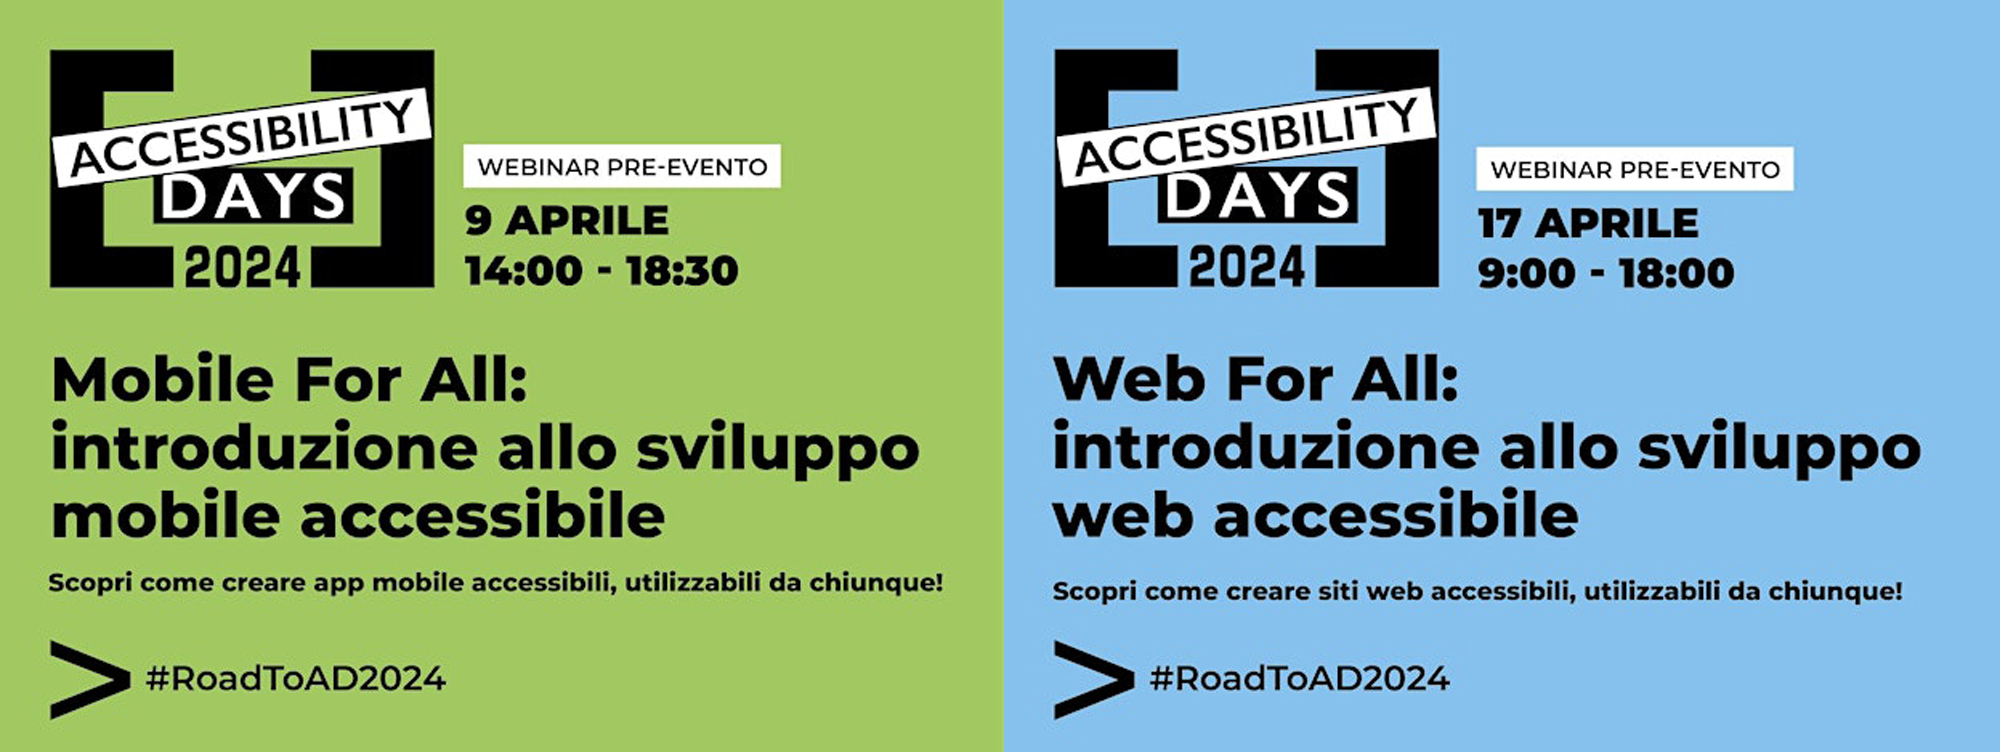 2 webinar sull'accessibilità in programma il 9 e il 17 aprile